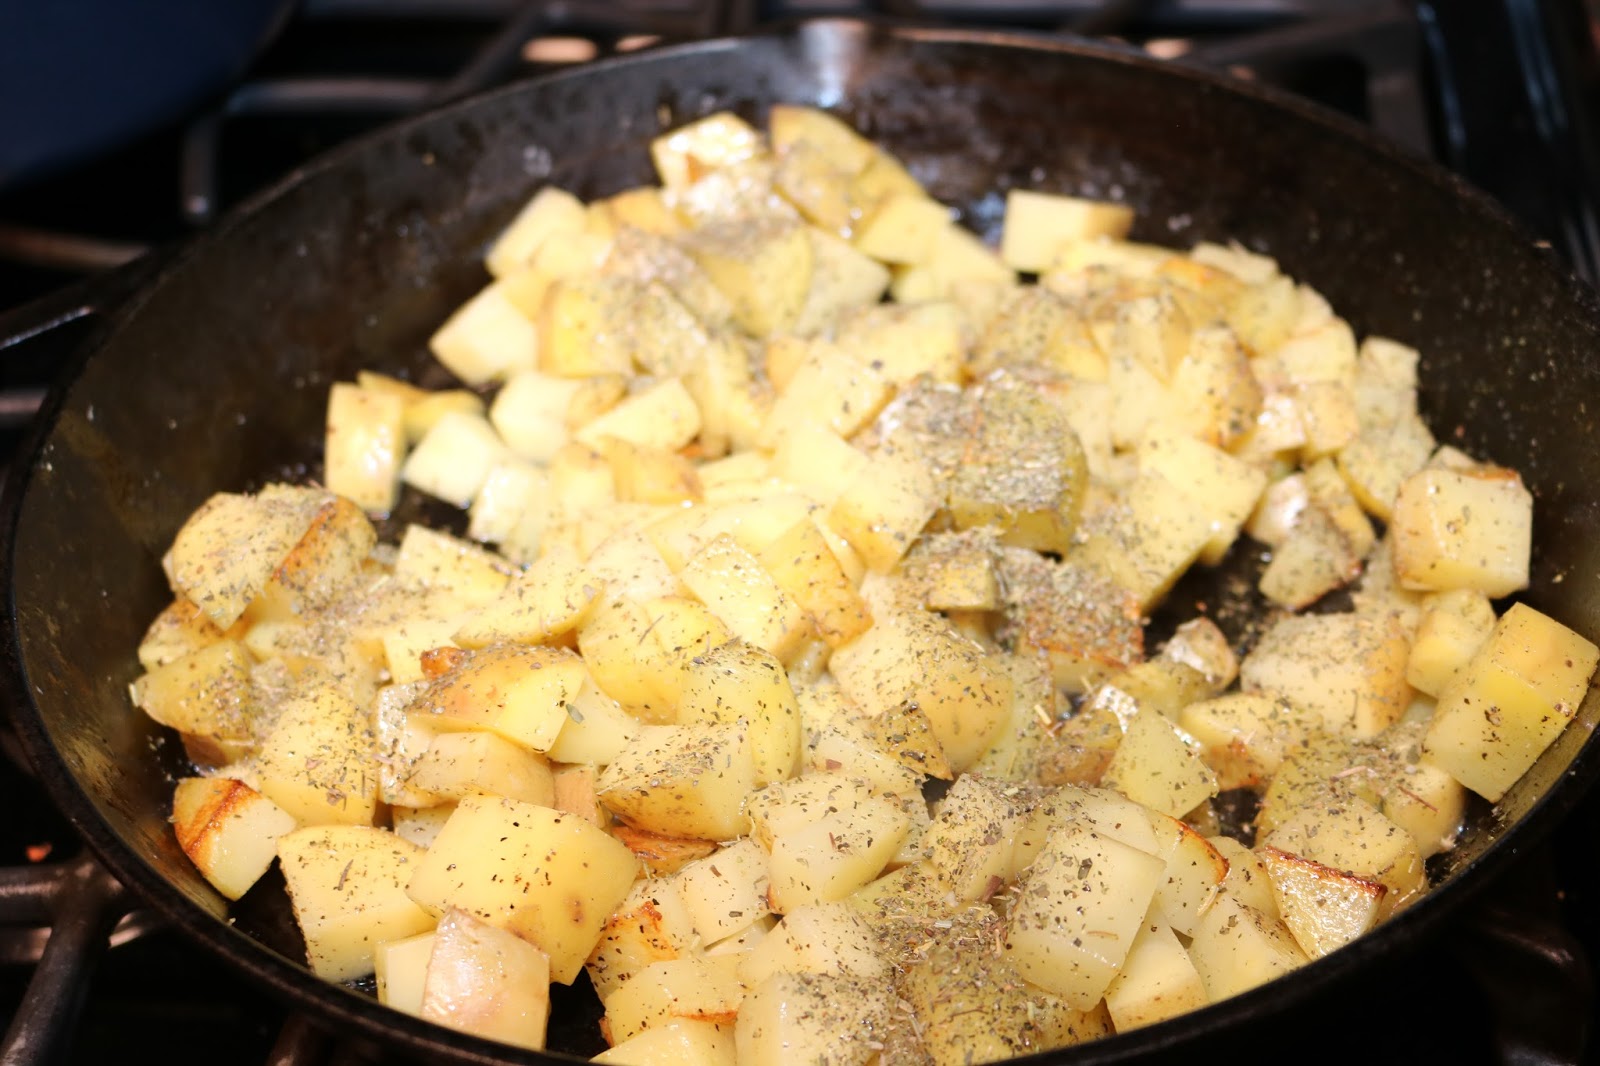 Michelle's Tasty Creations: Italian Breakfast Potatoes